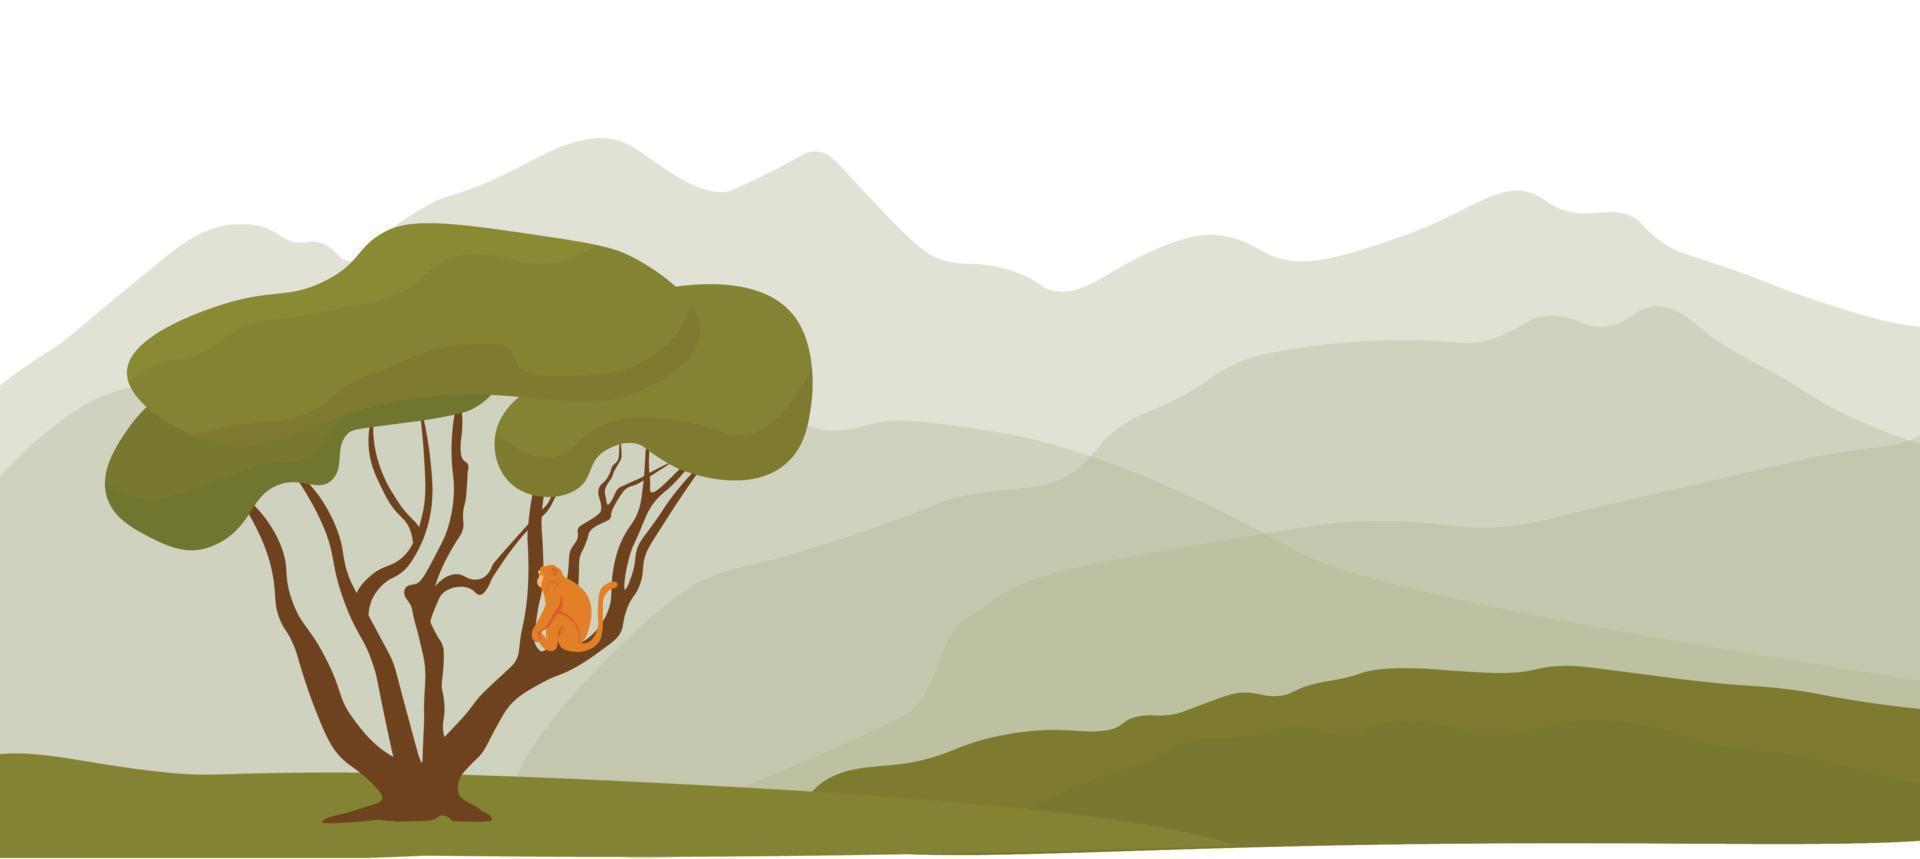 panorama horizontal da floresta tropical. ilustração vetorial de estoque. um macaco está sentado em uma árvore. horizonte nebuloso. floresta verde. vetor